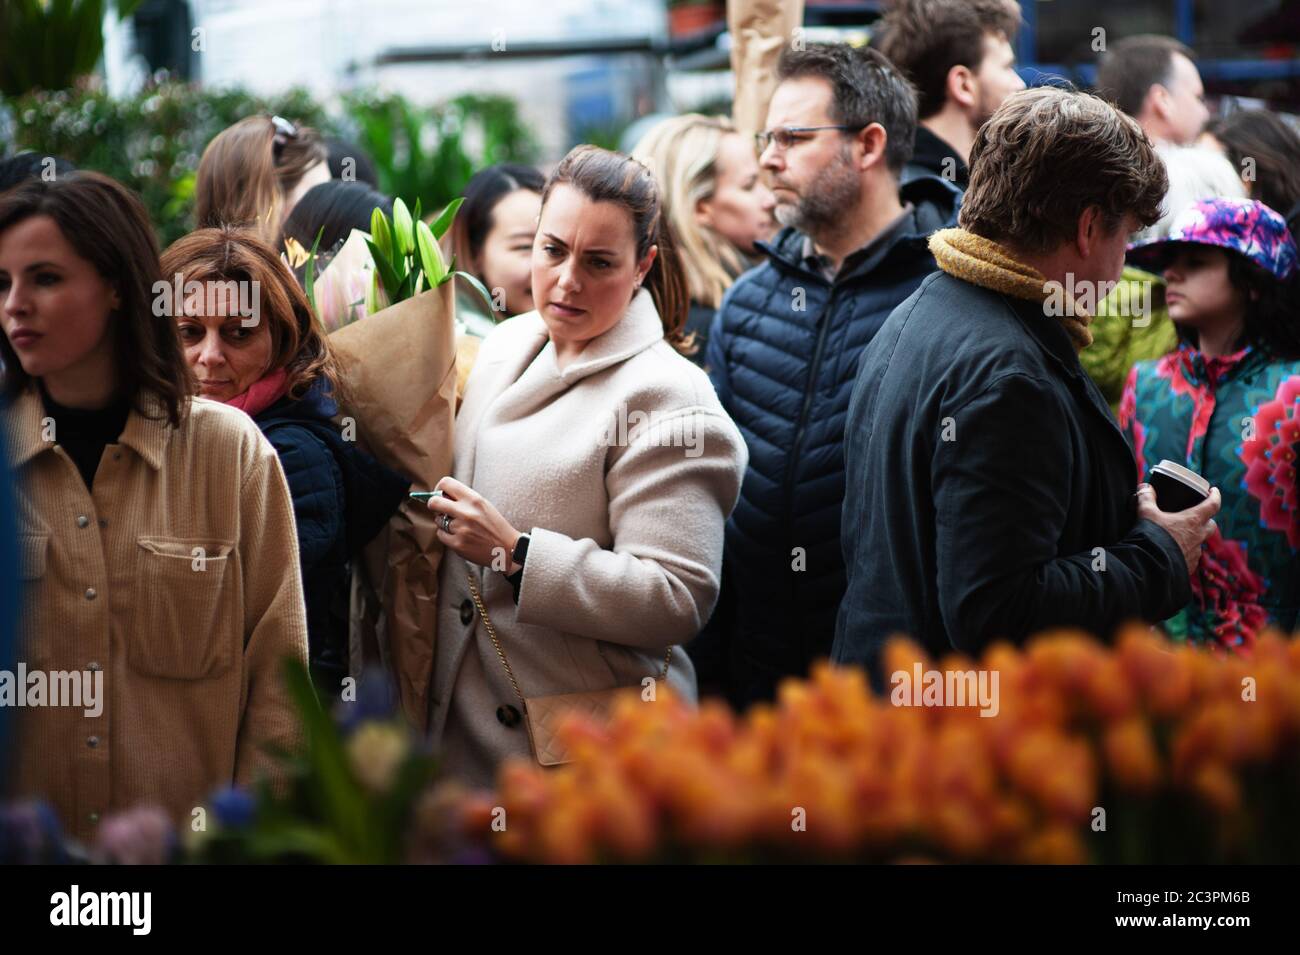 LONDRA - 31 MARZO 2019: I clienti del Mother's Day esplorano i fiori primaverili del mercato dei fiori di Columbia Road. Foto Stock